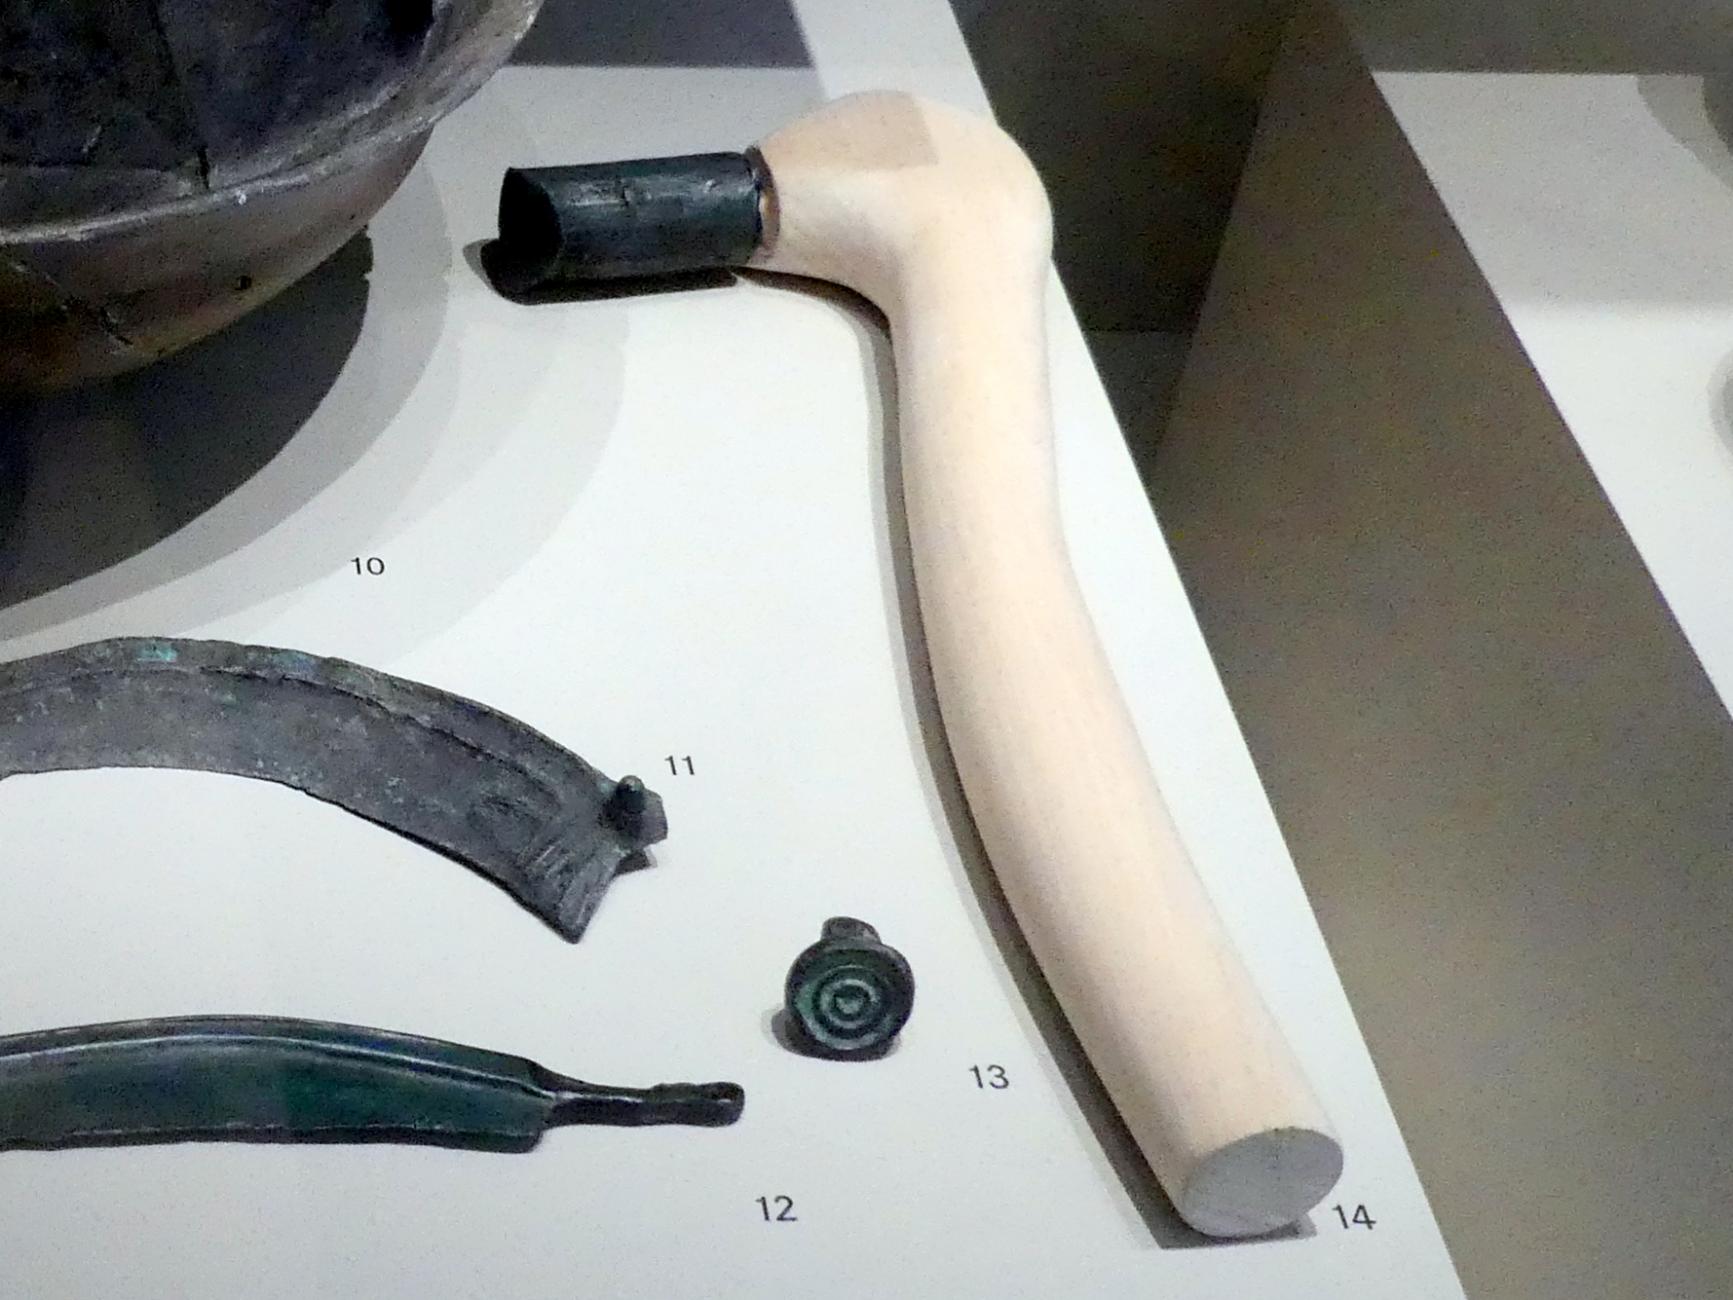 Tüllenhammer, 1100 - 900 v. Chr., Bild 1/2